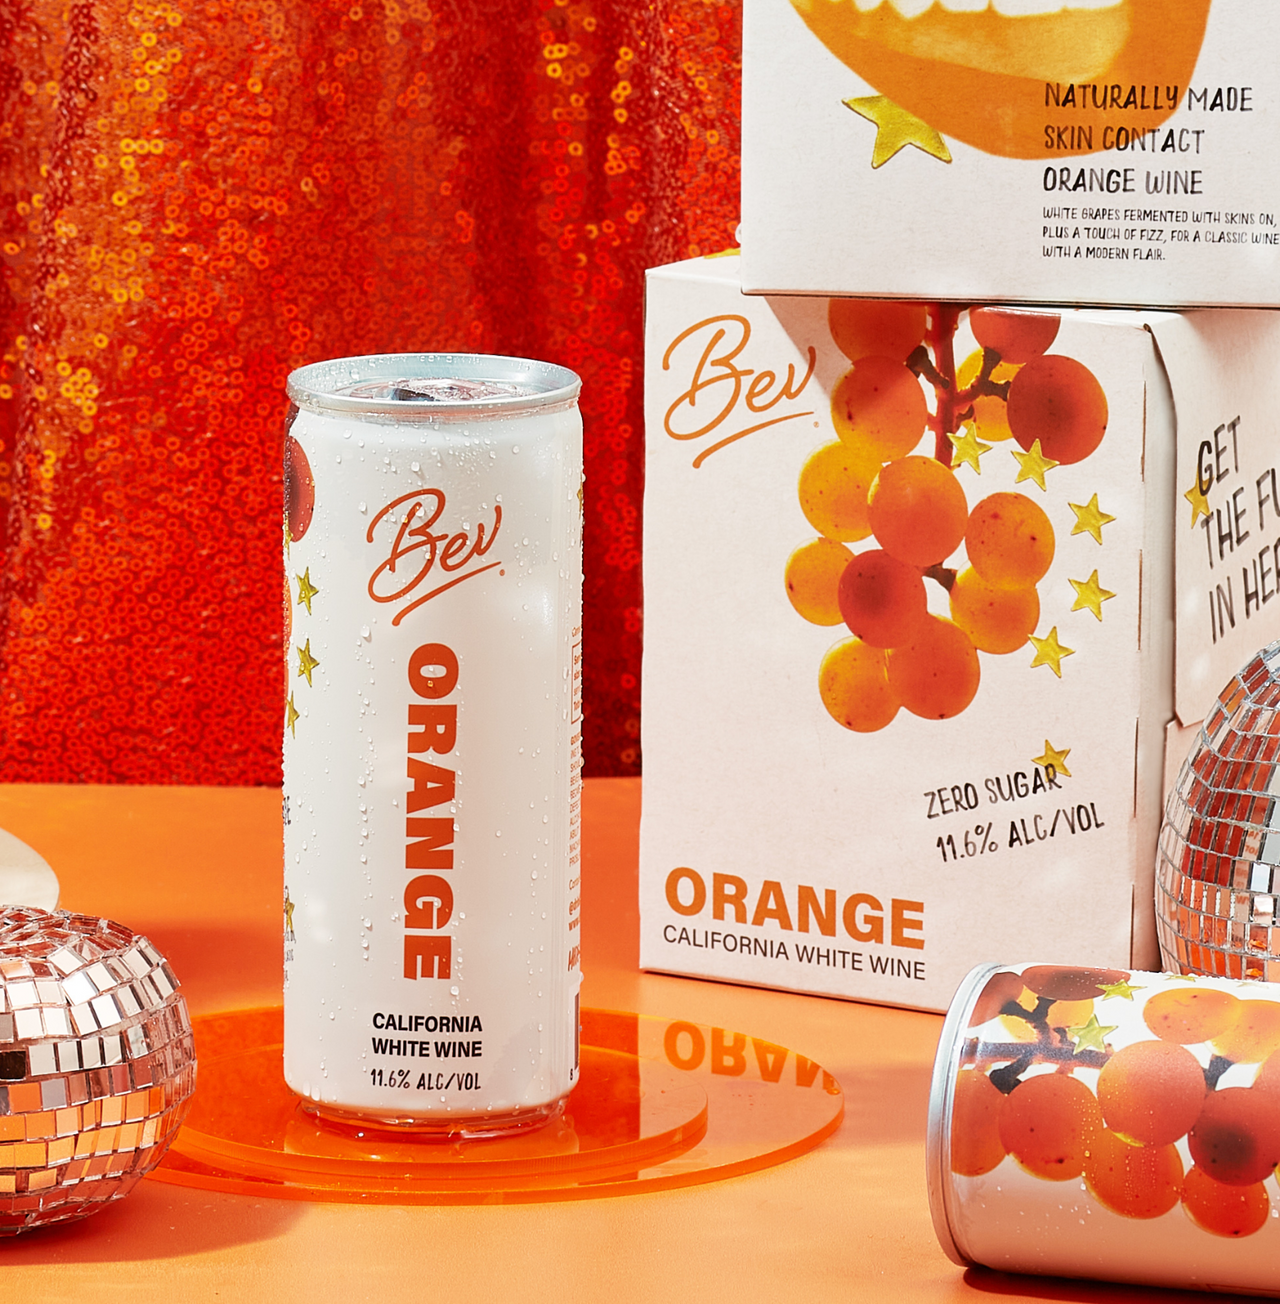 Orange wine product image